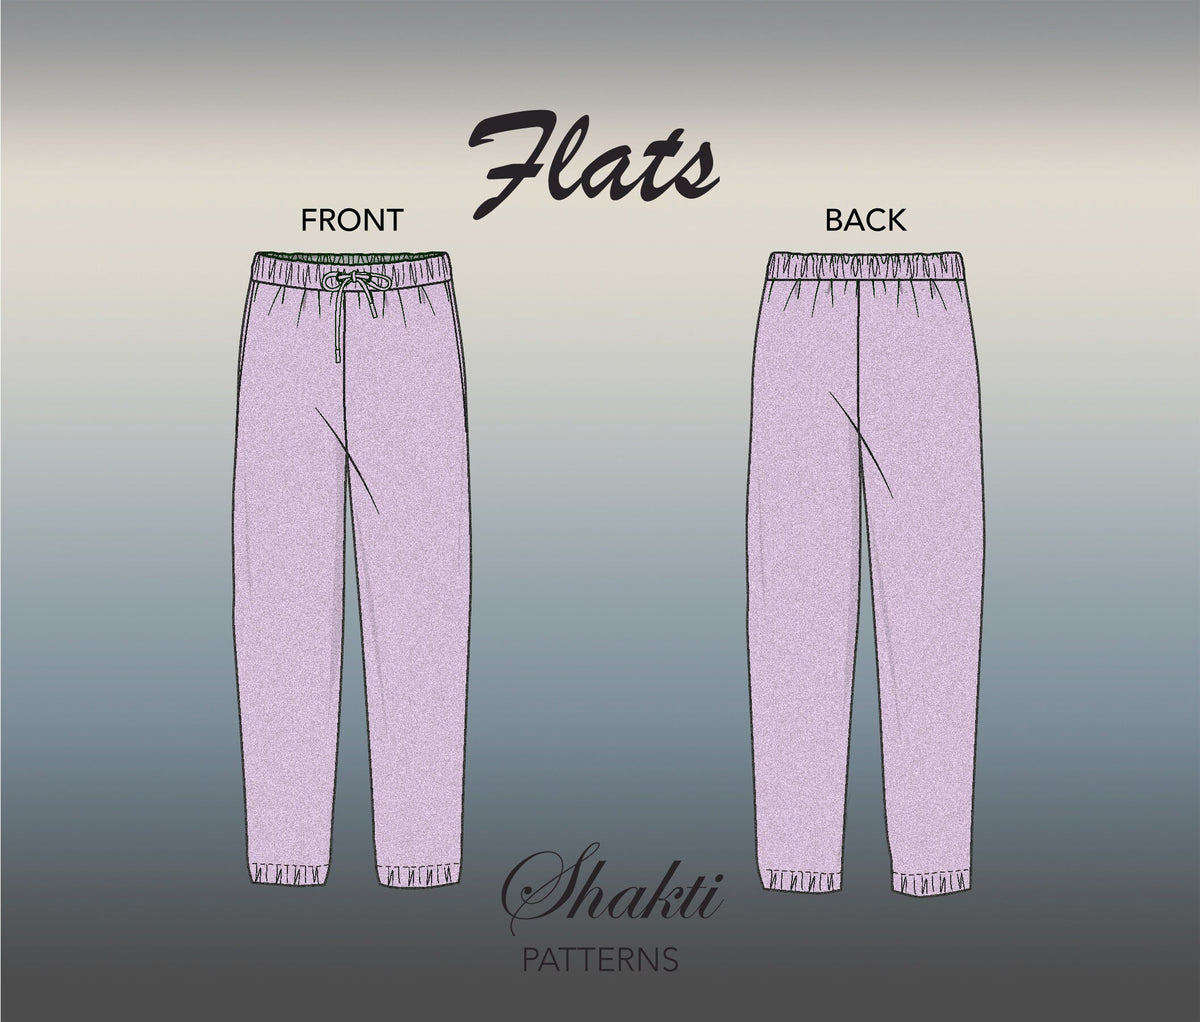 Women's Pant Suit Sewing Patterns Pdf Size 8-18 US,36-46 EU -  Sweden